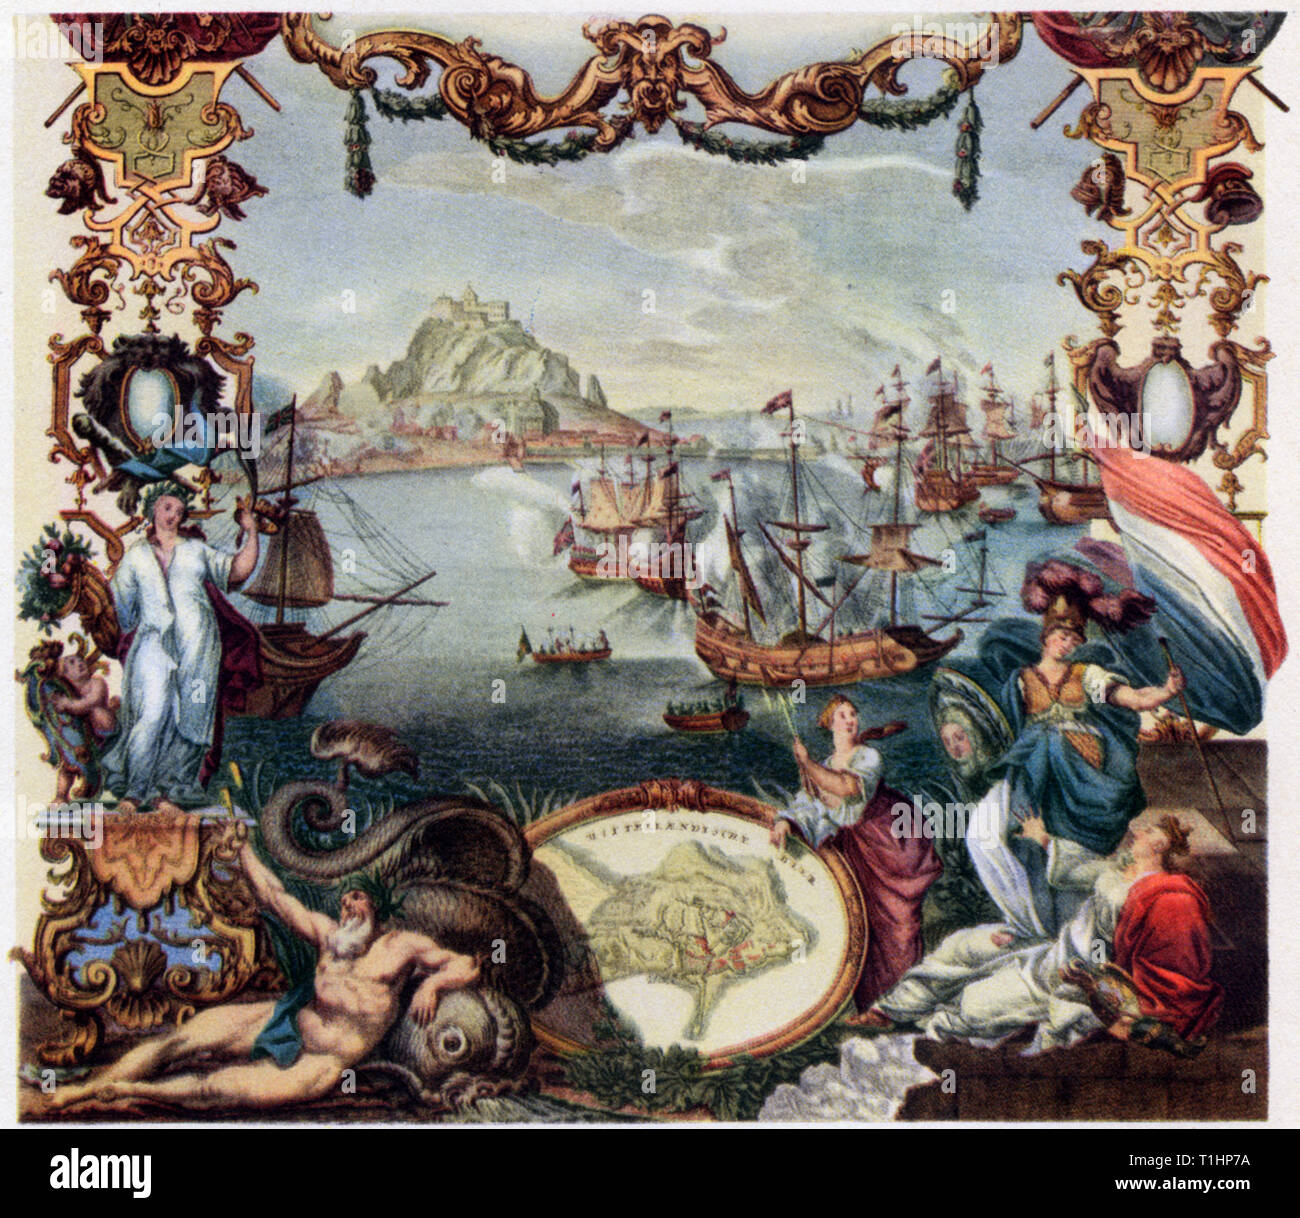 La cattura di Gibilterra, 1704. Da Johann Agosto Corvino (1683-1738) e Paulus Decker il Vecchio (1677-1713). La cattura di Gibilterra da parte di Anglo-olandese di forze della grande alleanza fra il 1 e il 3 agosto 1704, durante la Guerra di Successione Spagnola. Foto Stock